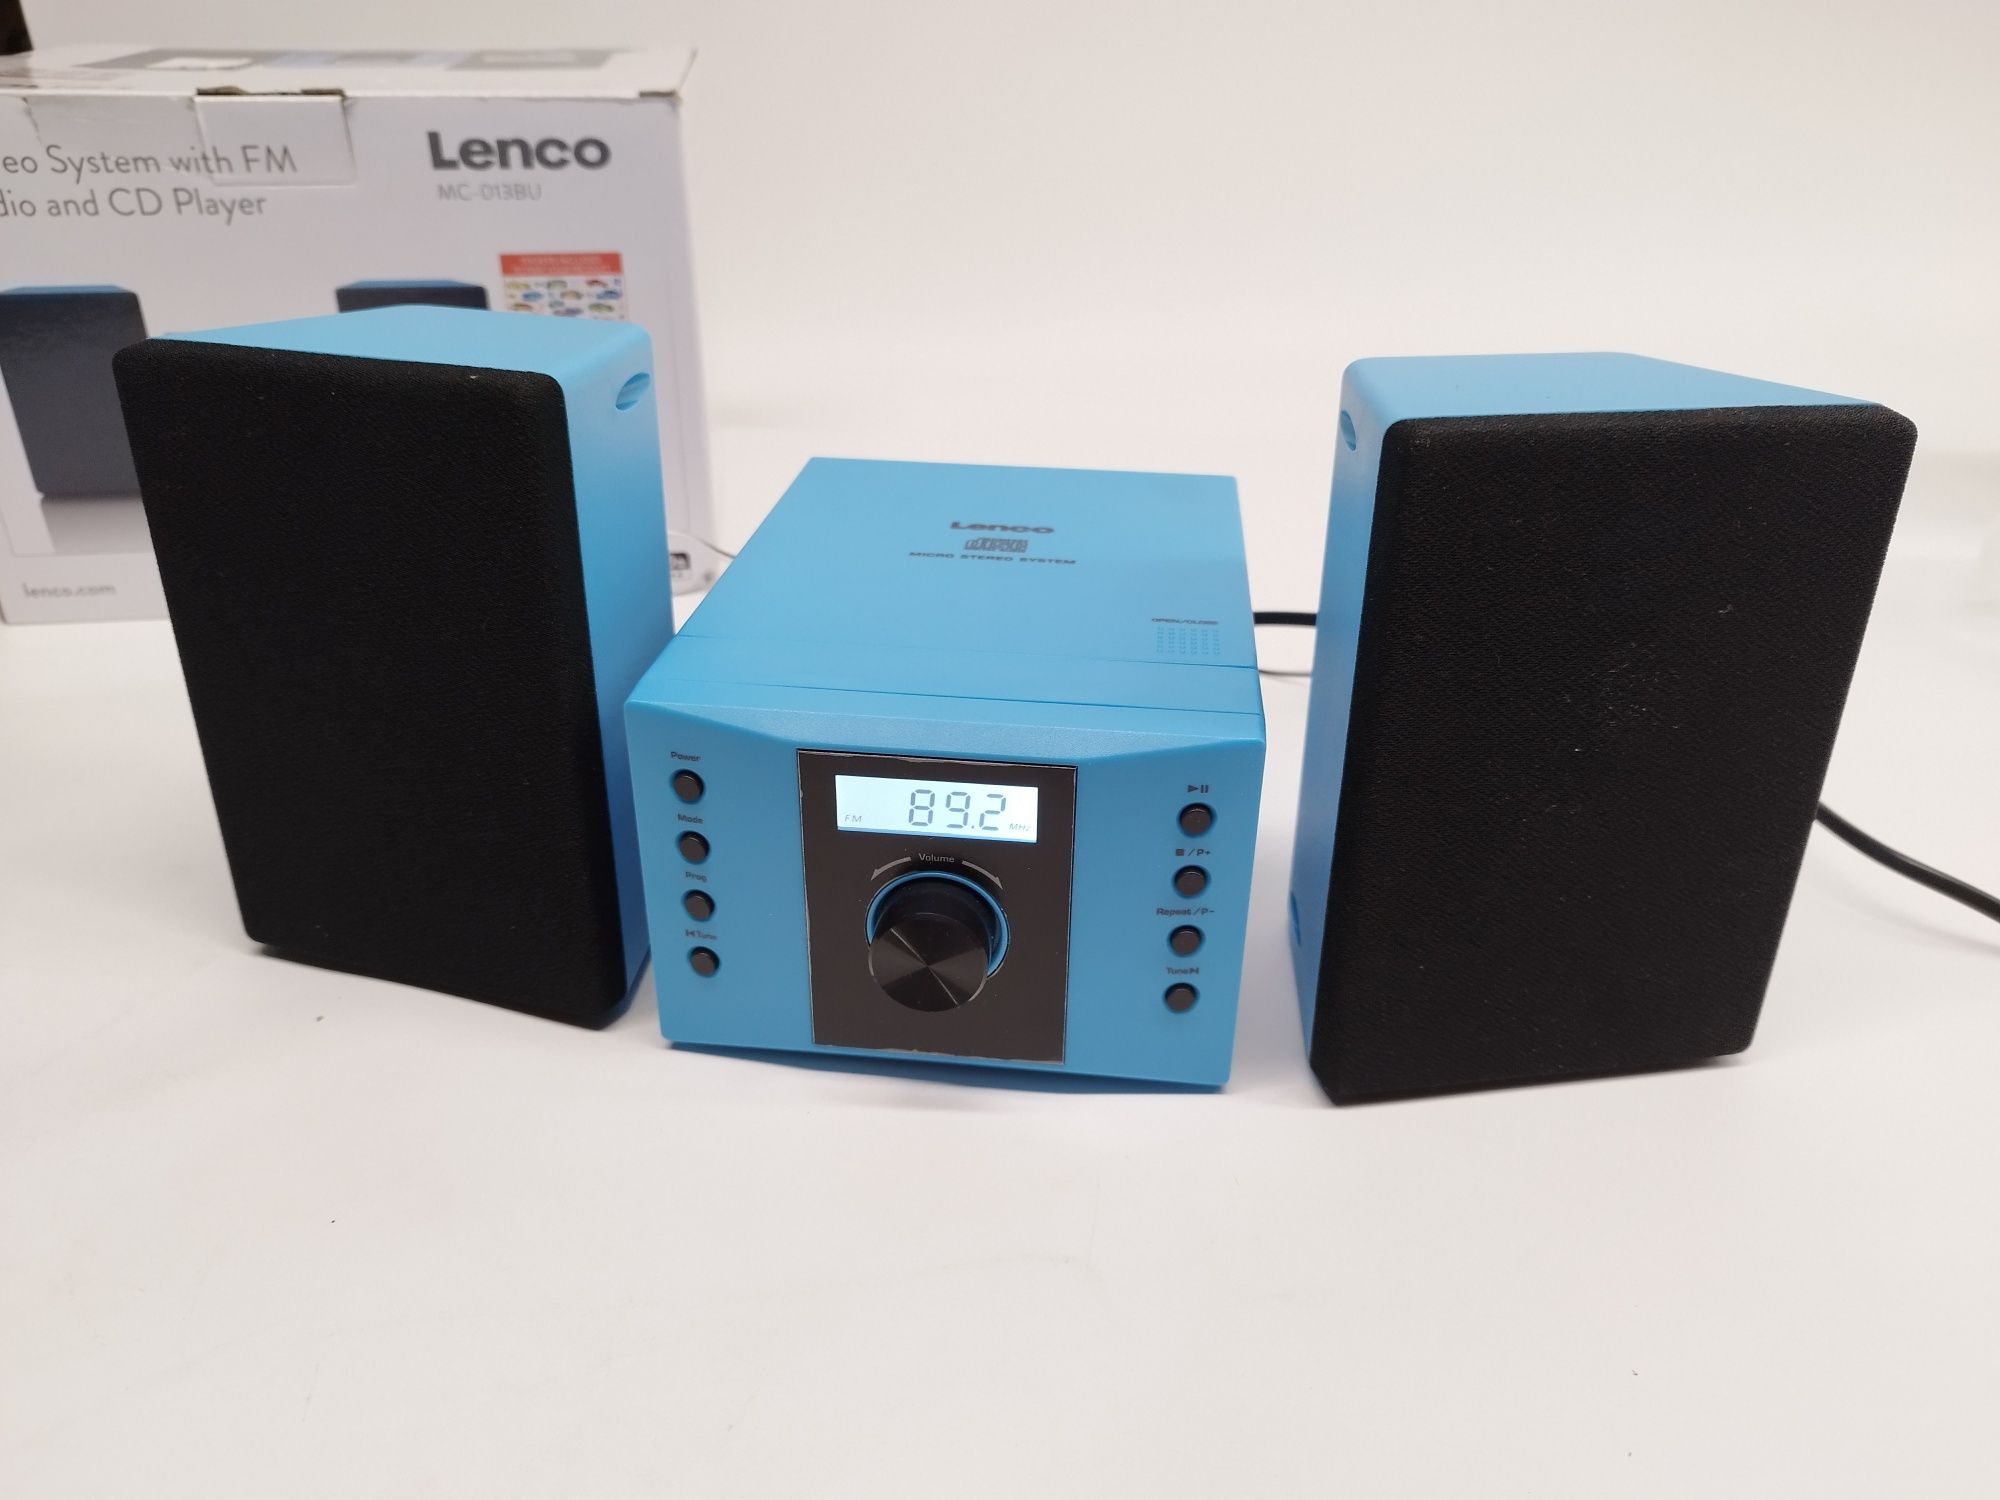 Mini wieża zestaw stereo lenco mc-013bu